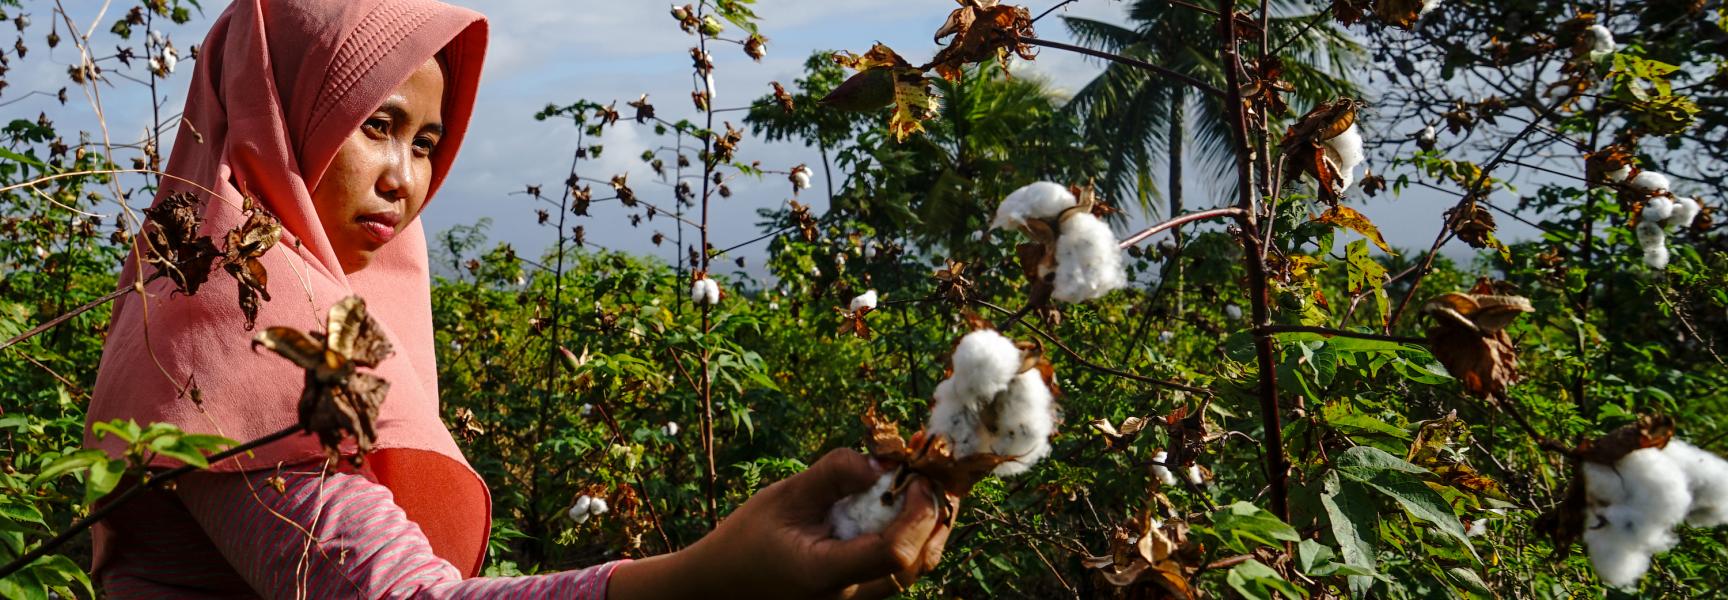 Mujer recolectando algodón en Indonesia